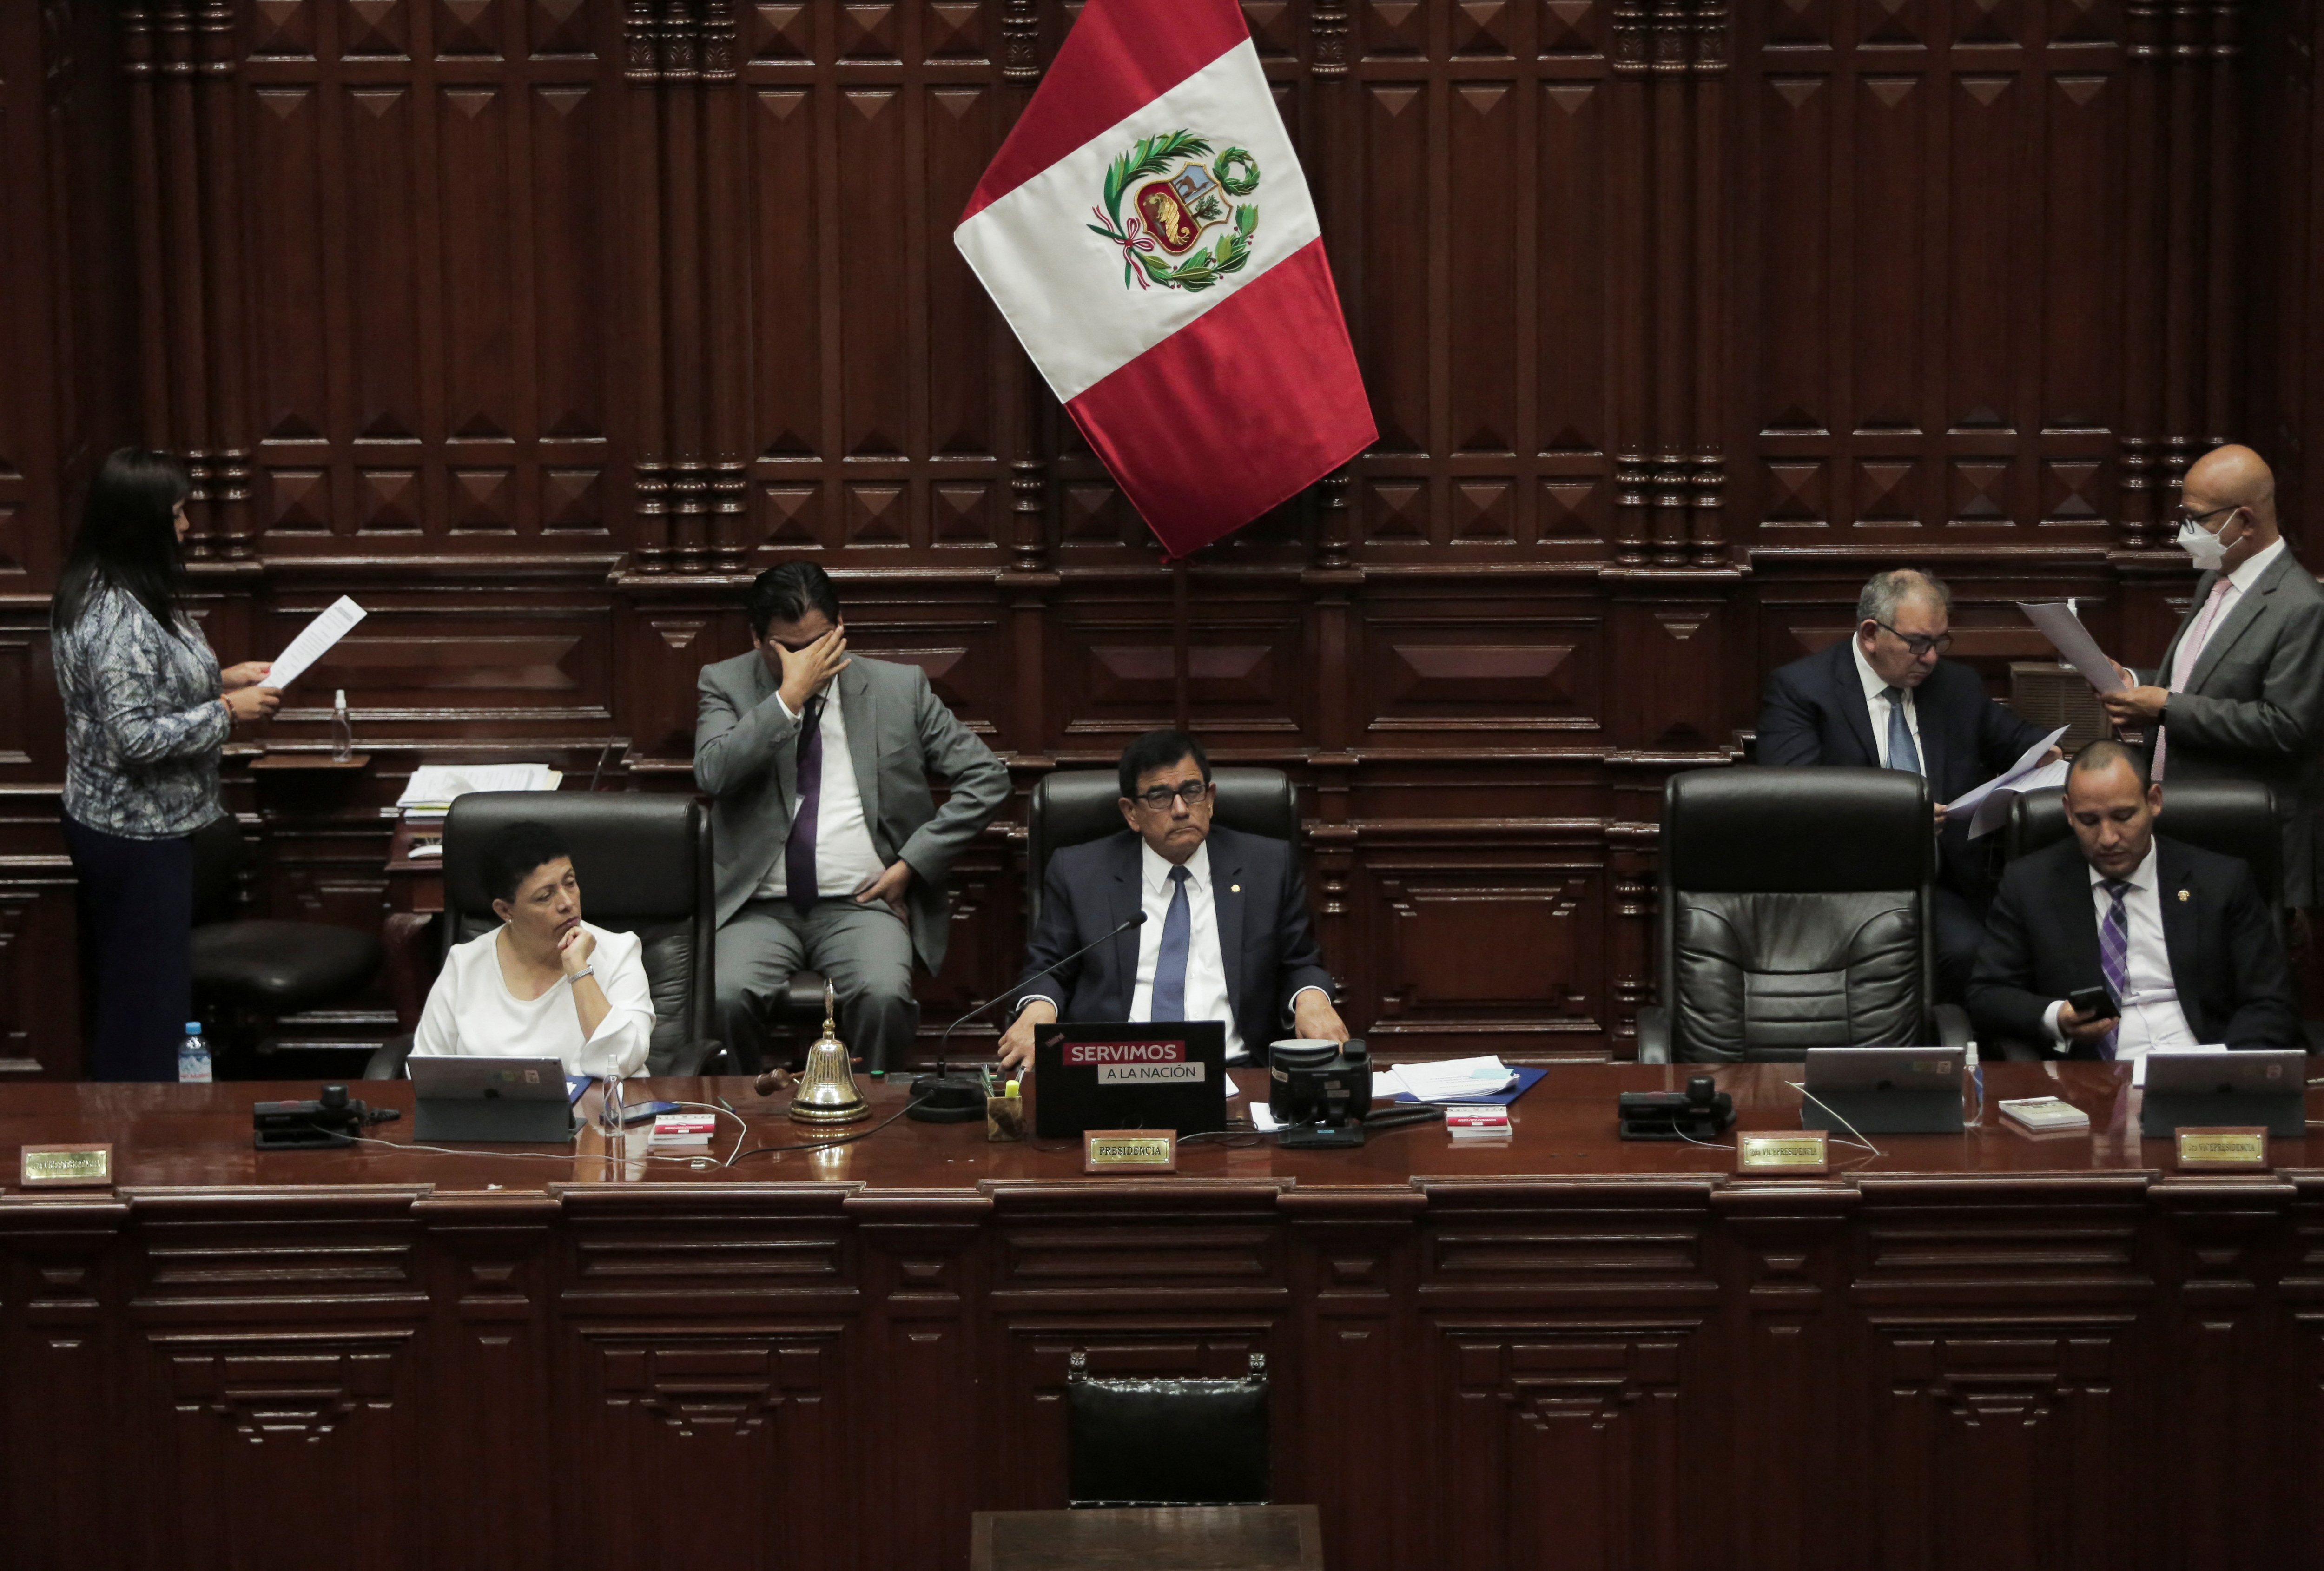 Ο νέος ηγέτης του Περού φέρνει πρόωρες εκλογές καθώς επτά πεθαίνουν στις διαδηλώσεις